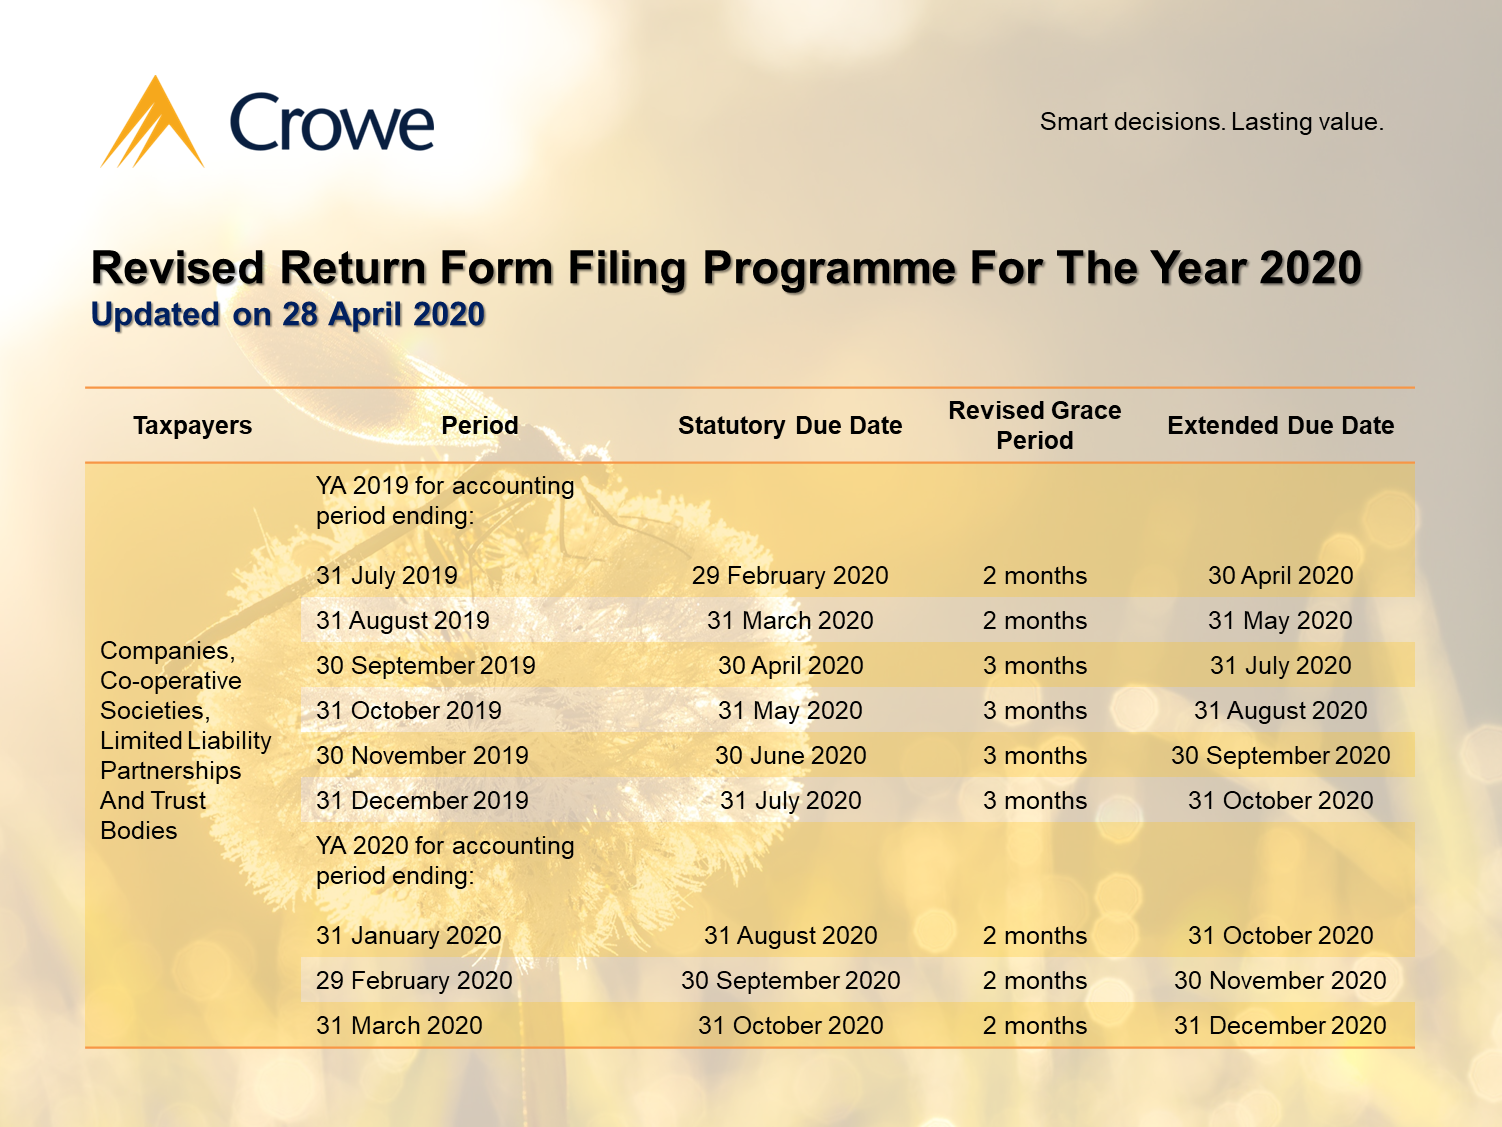 Revised Return Form Filing Programme Table